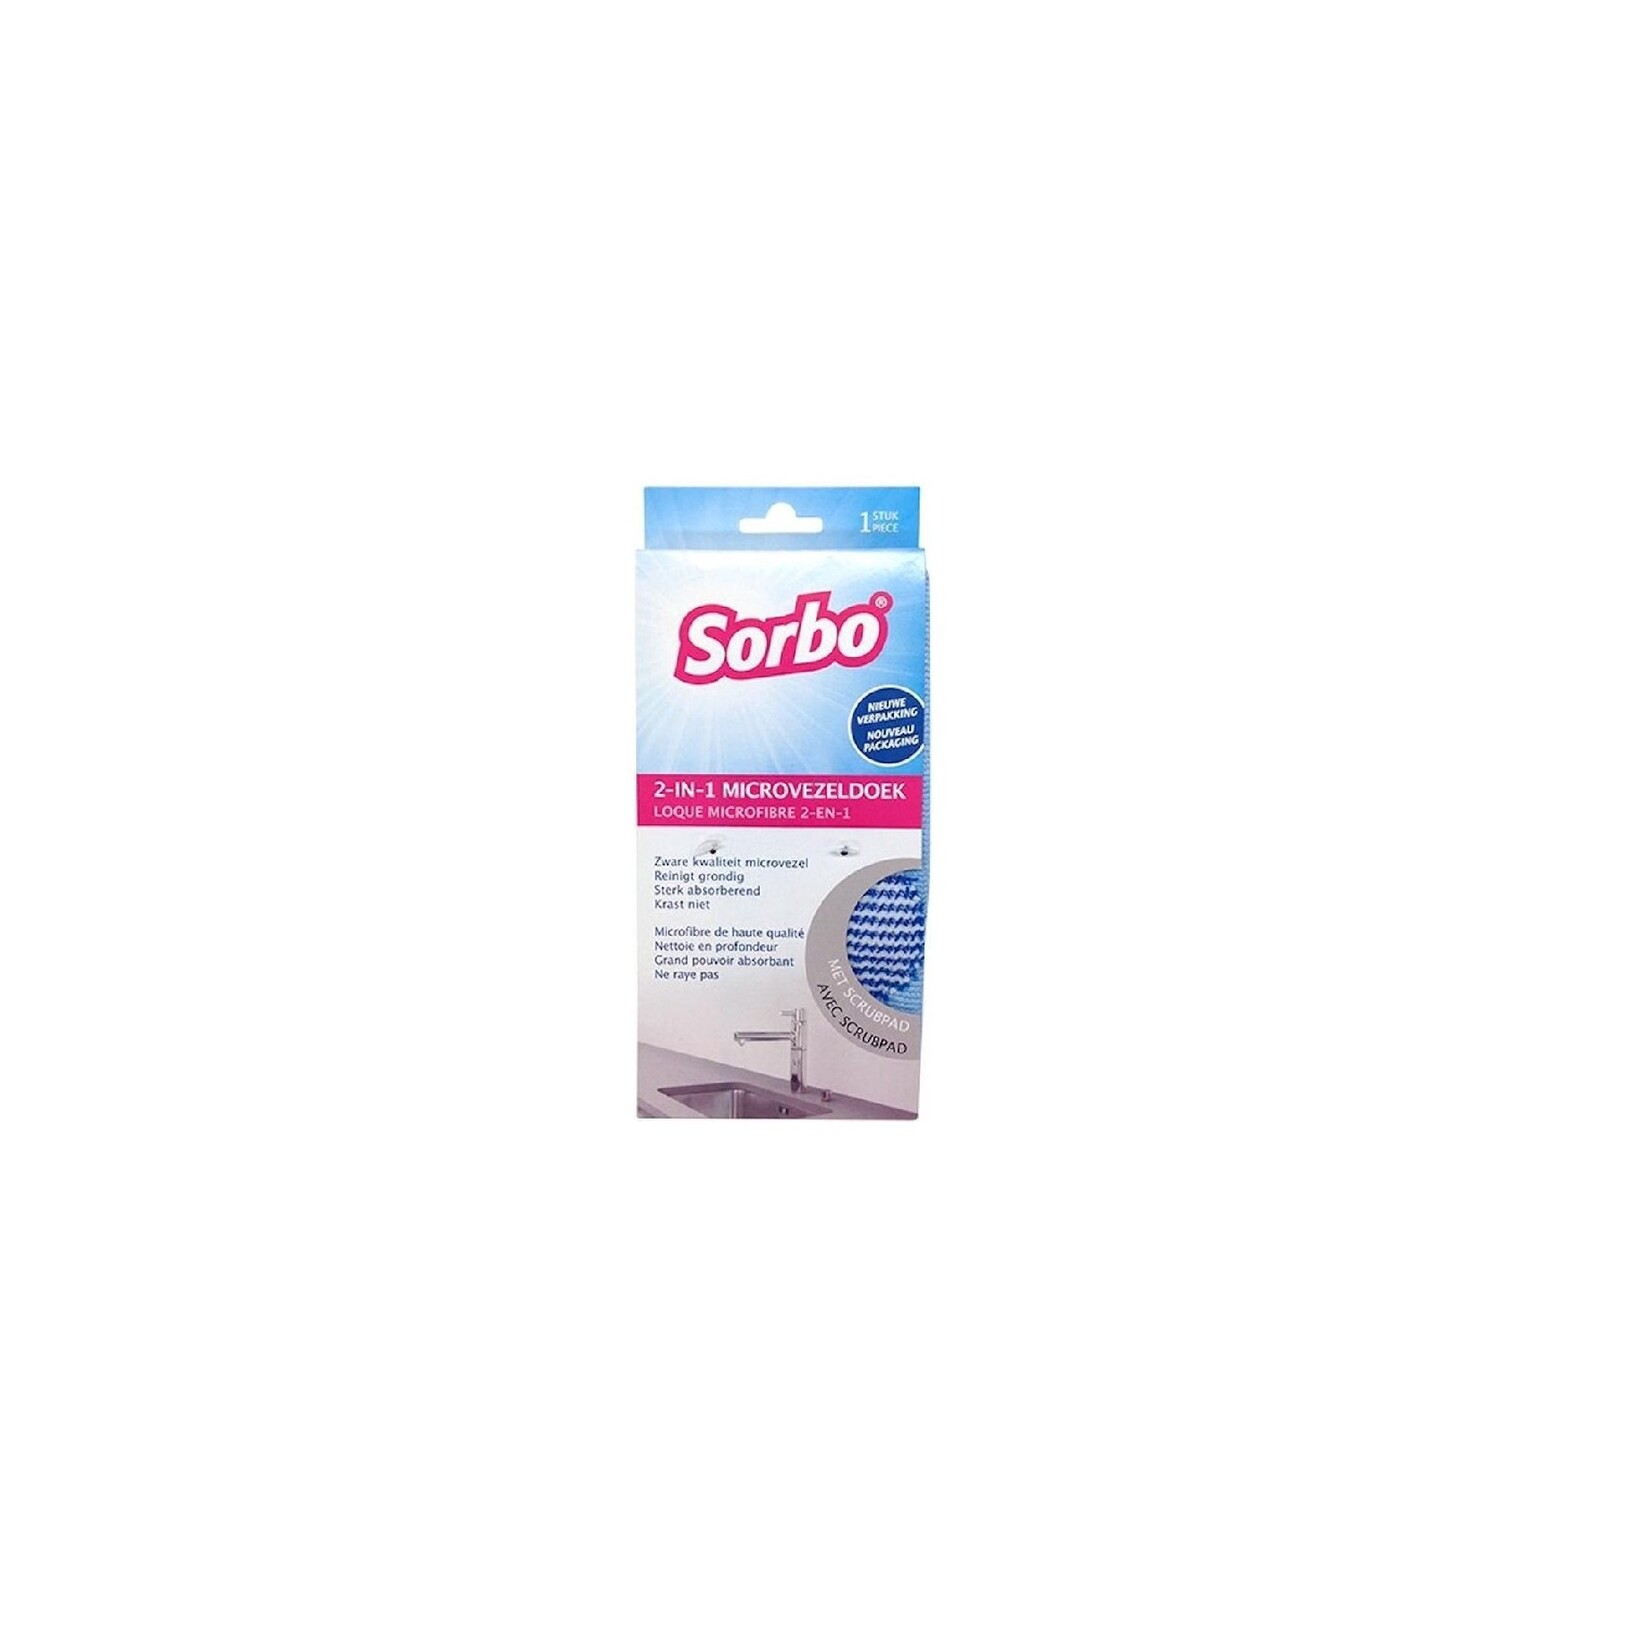 Sorbo Sorbo 2-in-1 cloth - twee in een microvezeldoek - scrubben anti-kras en absorberen - met scrubpad extra vochtabsorberend